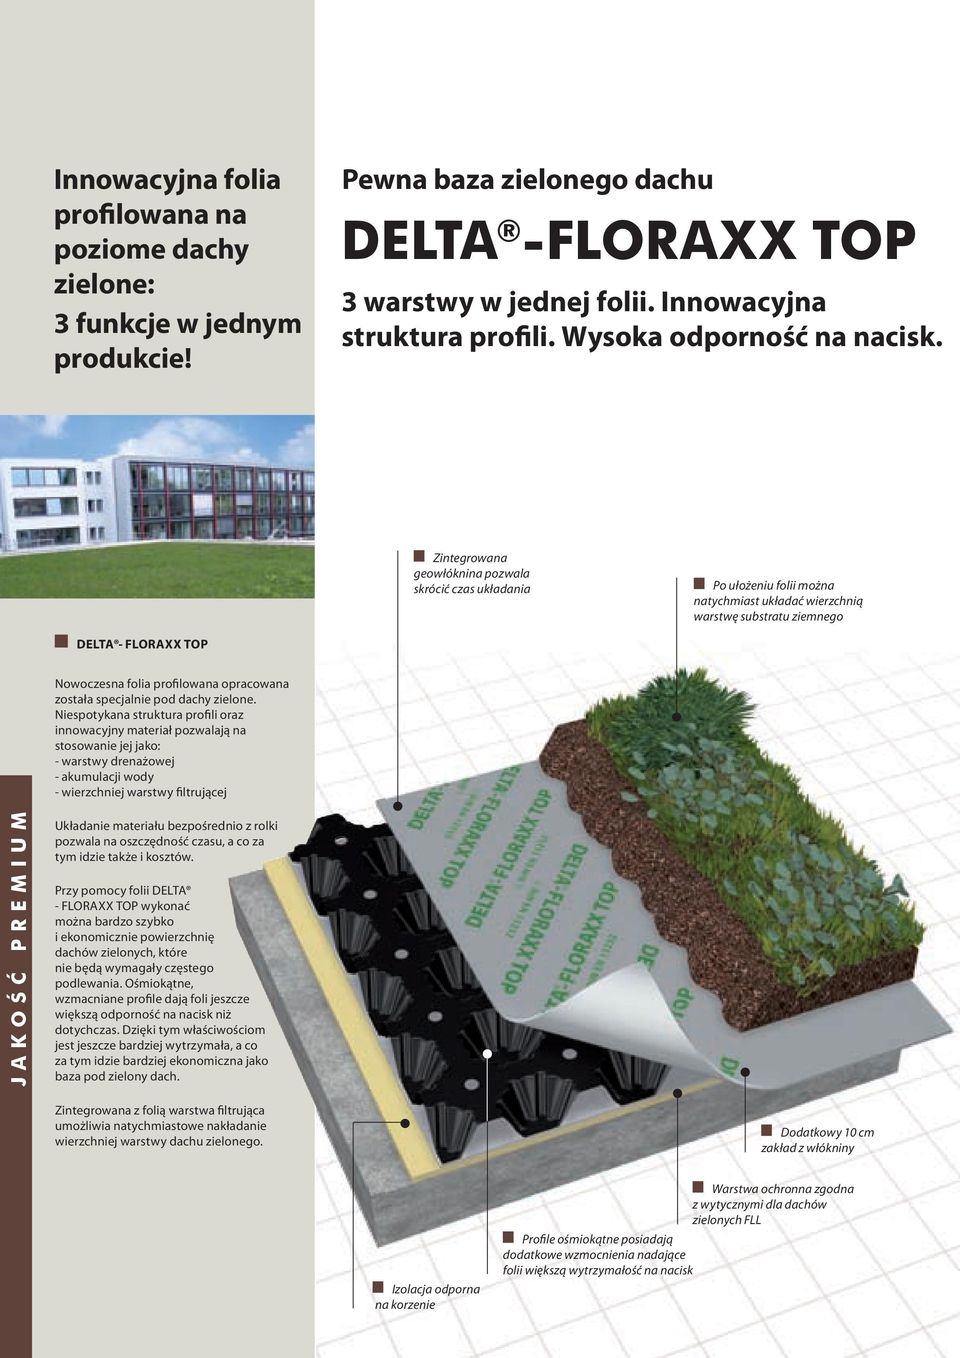 Zintegrowana geowłóknina pozwala skrócić czas układania Po ułożeniu folii można natychmiast układać wierzchnią warstwę substratu ziemnego DELTA - FLORAXX TOP Nowoczesna folia profilowana opracowana